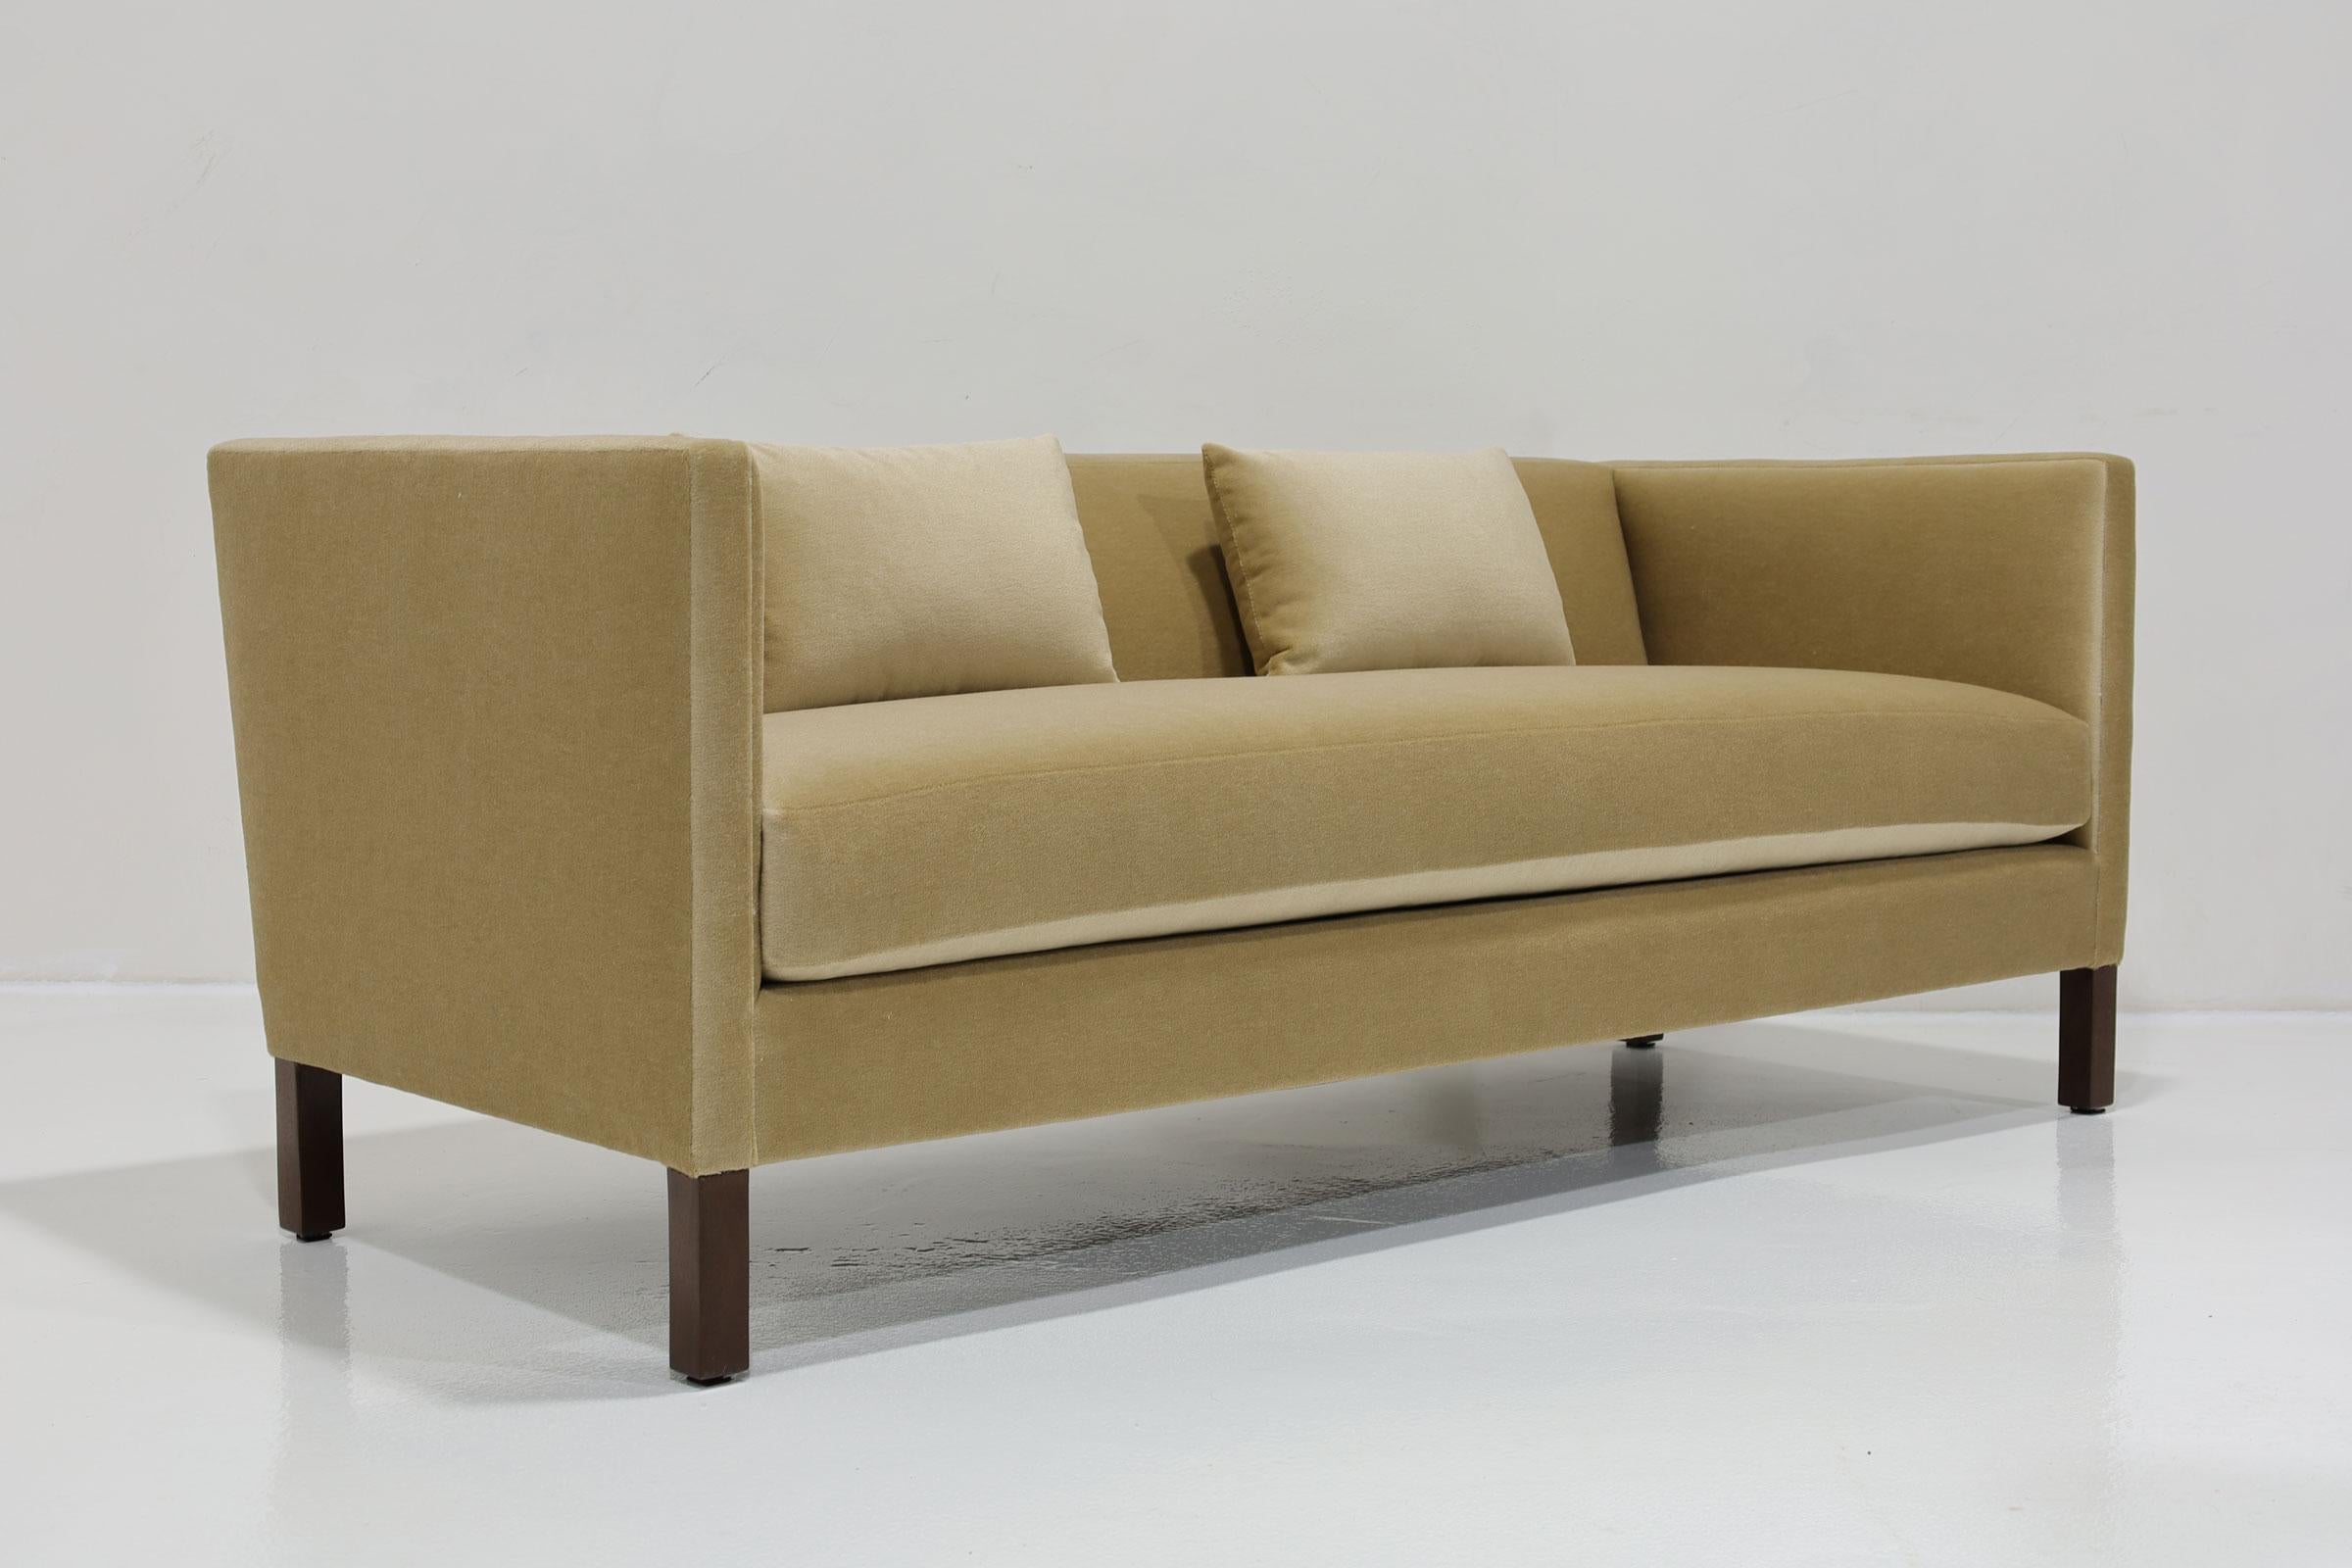 Ein klassisches Sofa mit klaren Linien von Edward Wormley für Dunbar. Wir haben mit Great Plains Mohair von Holly Hunt aktualisiert.